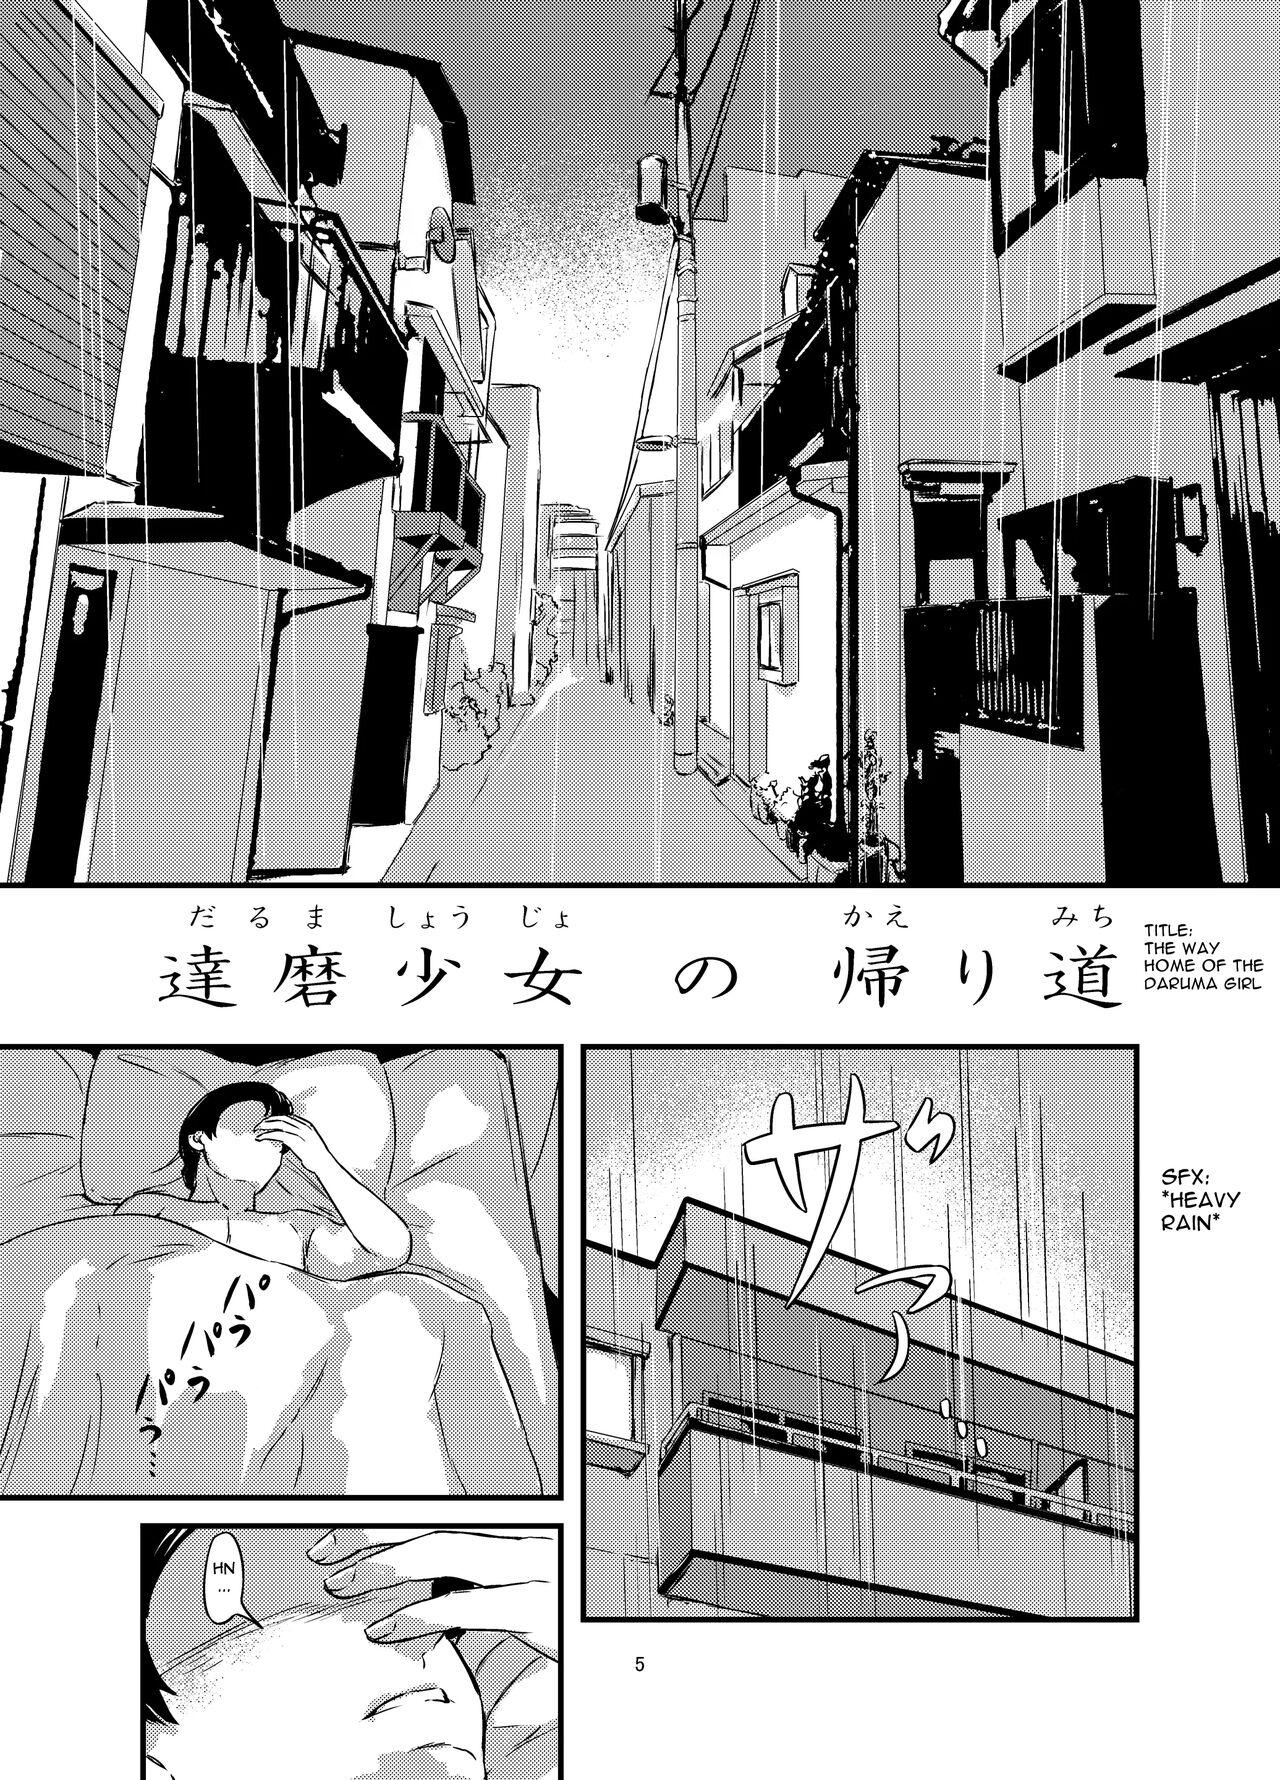 Busty daruma shoujo no kaeri michi - Original Roludo - Page 5